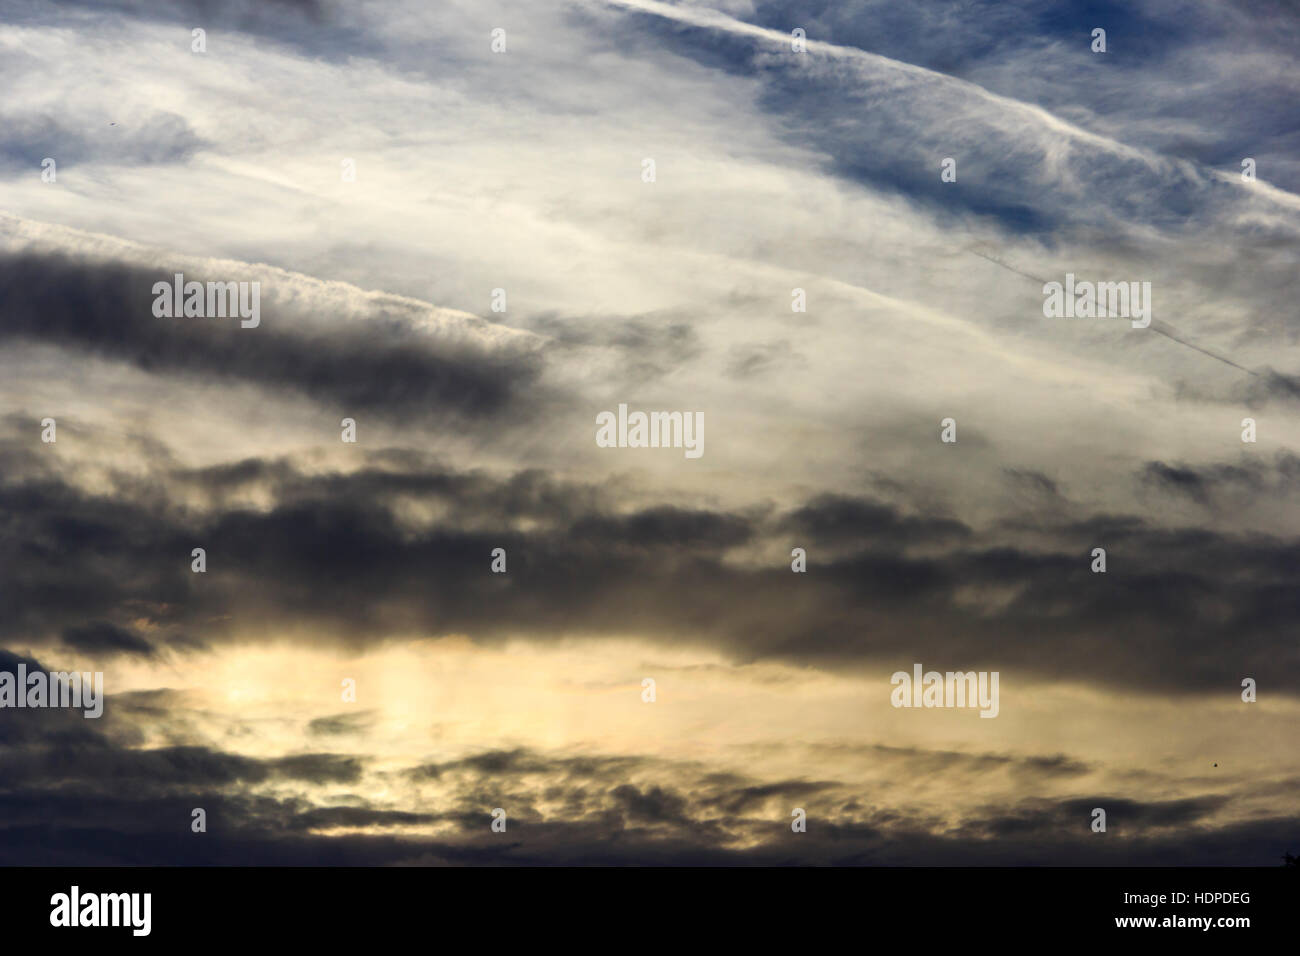 Dunkle Wolken am Himmel bei Sonnenuntergang mit dem Flugzeug Kondensstreifen Stockfoto